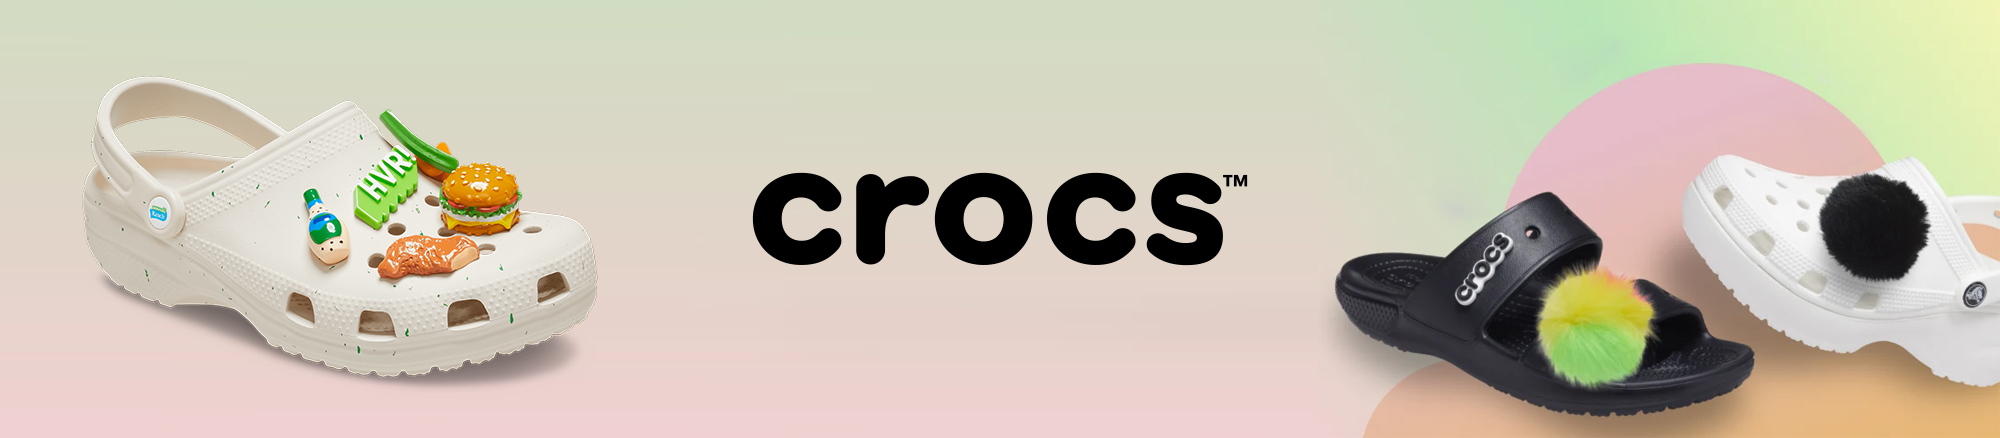 crocs_170357.jpg